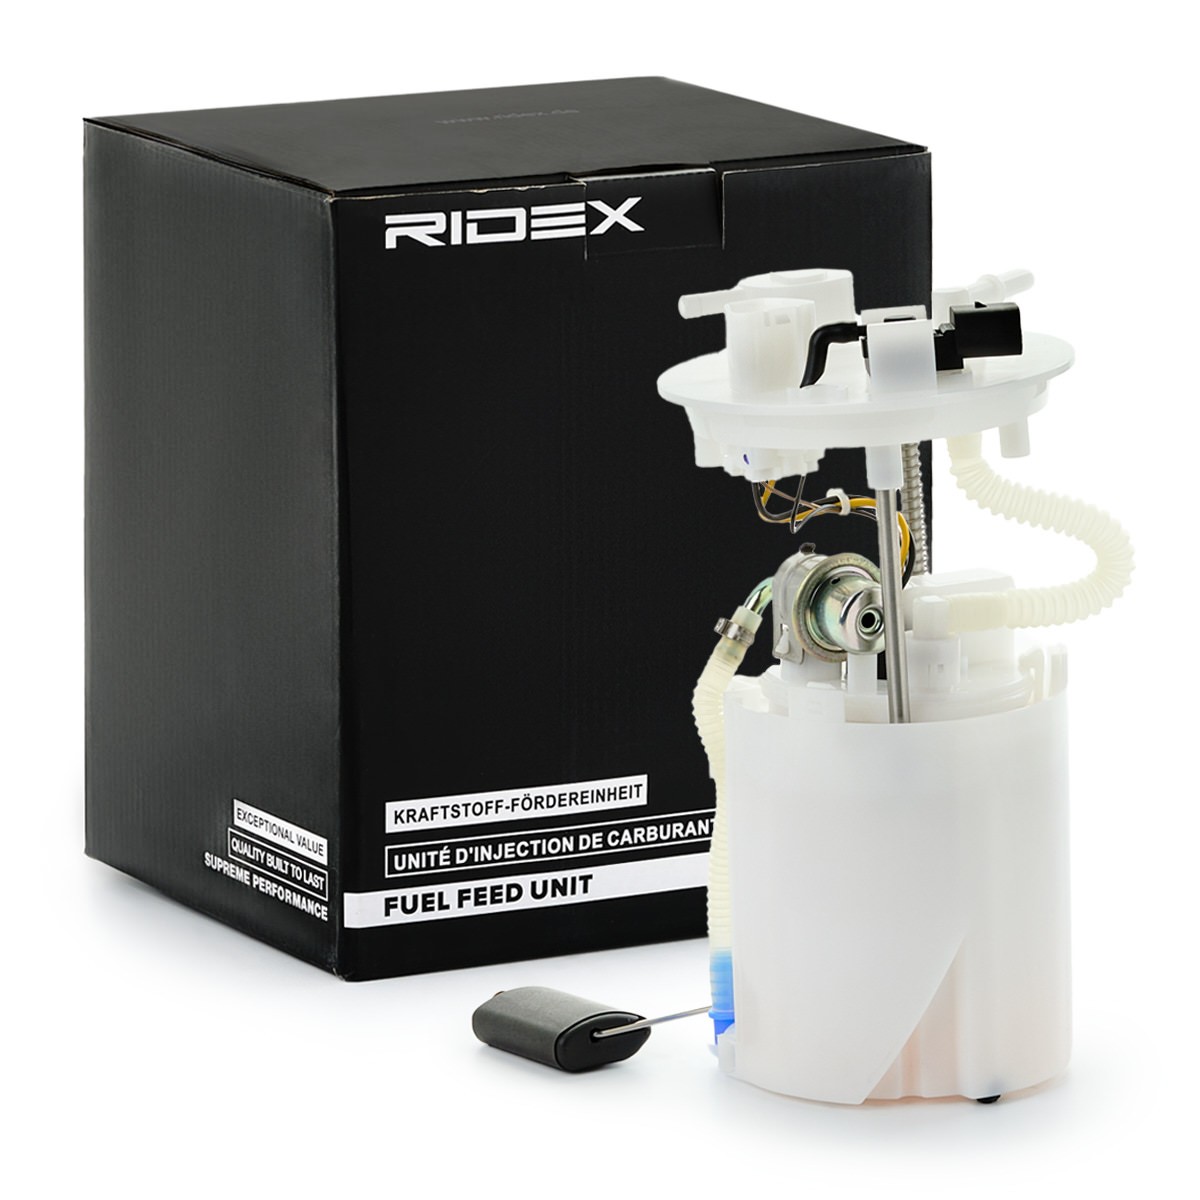 RIDEX 1382F0519 Fuel feed unit Electric